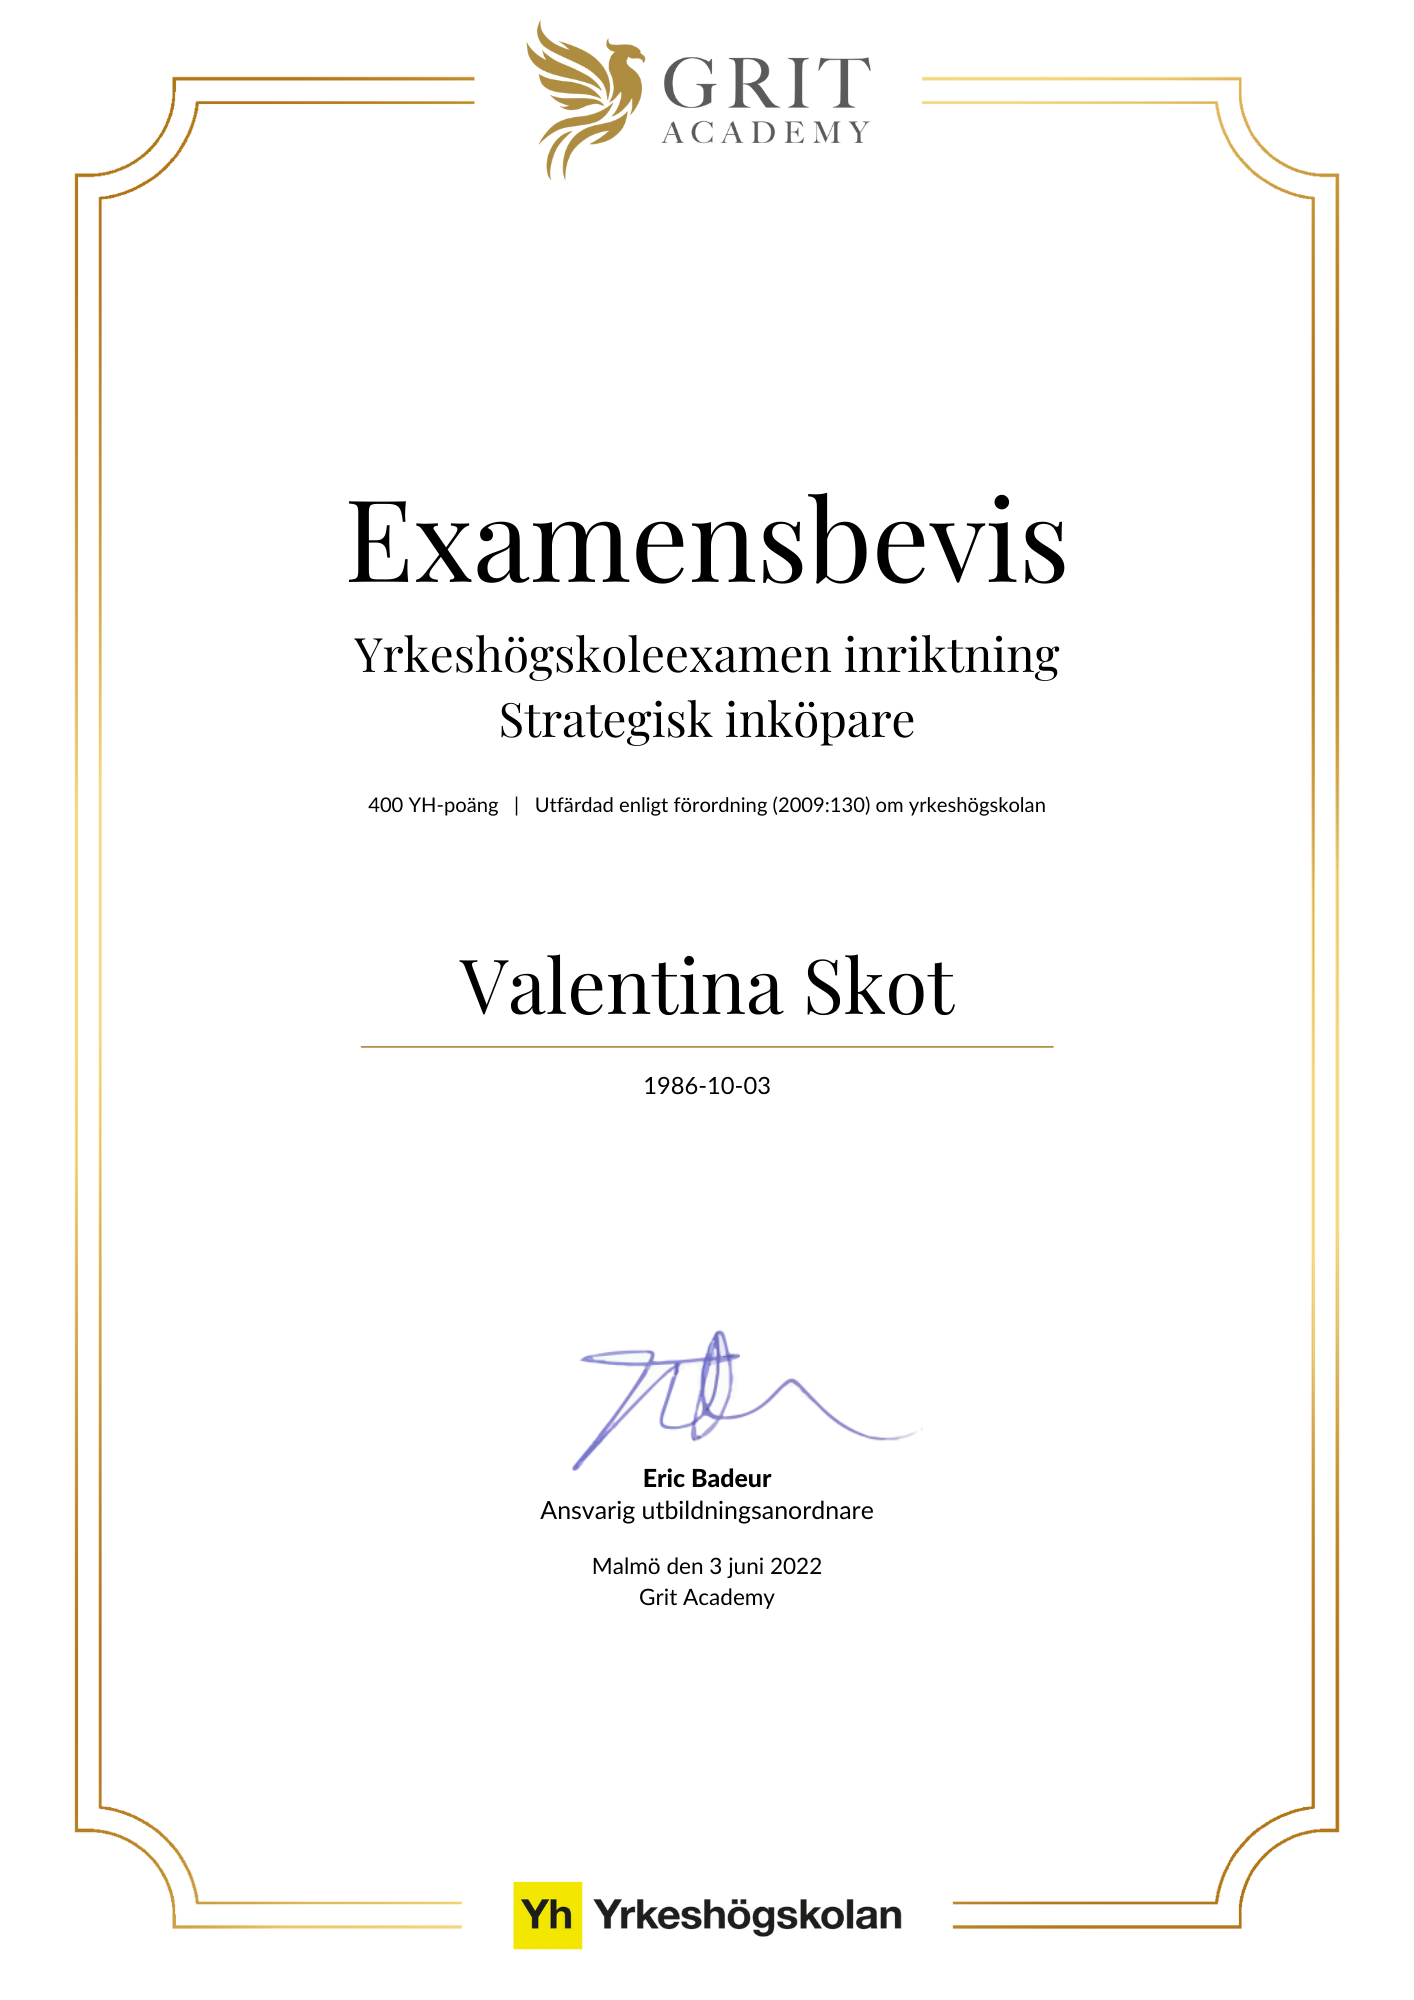 Examensbevis Valentina Skot - 1